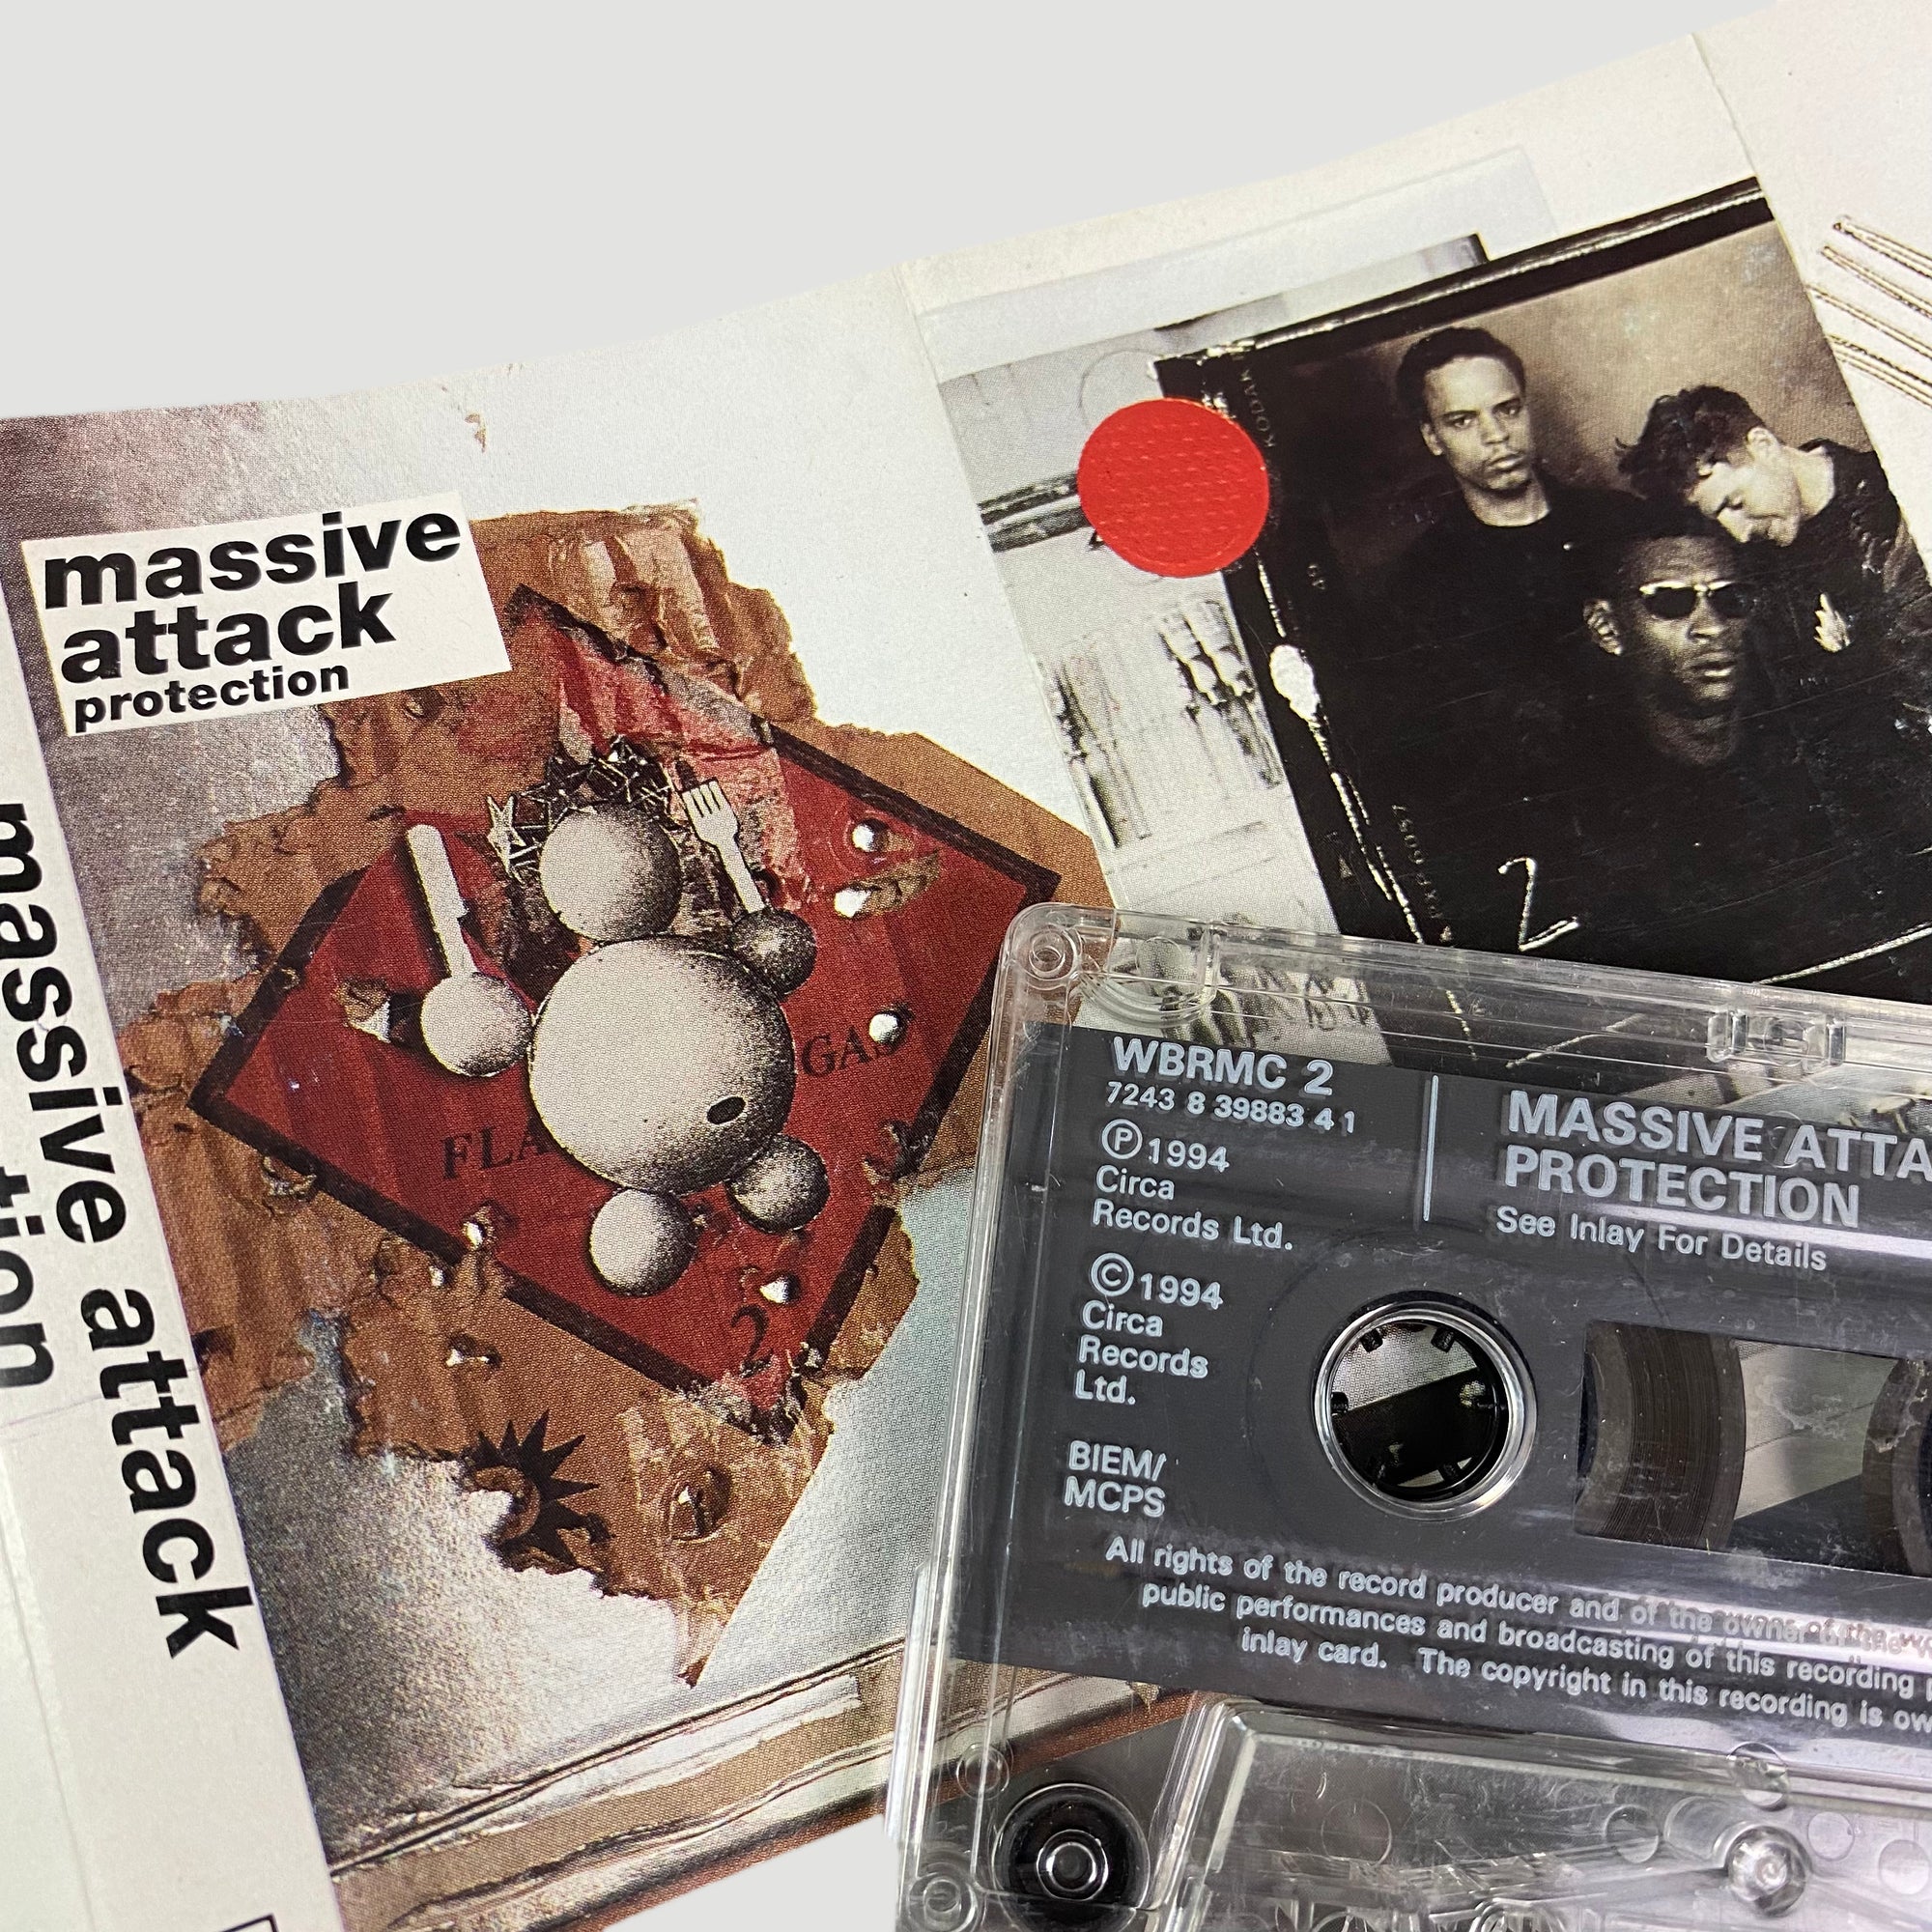 1994 Massive Attack Protection Cassette